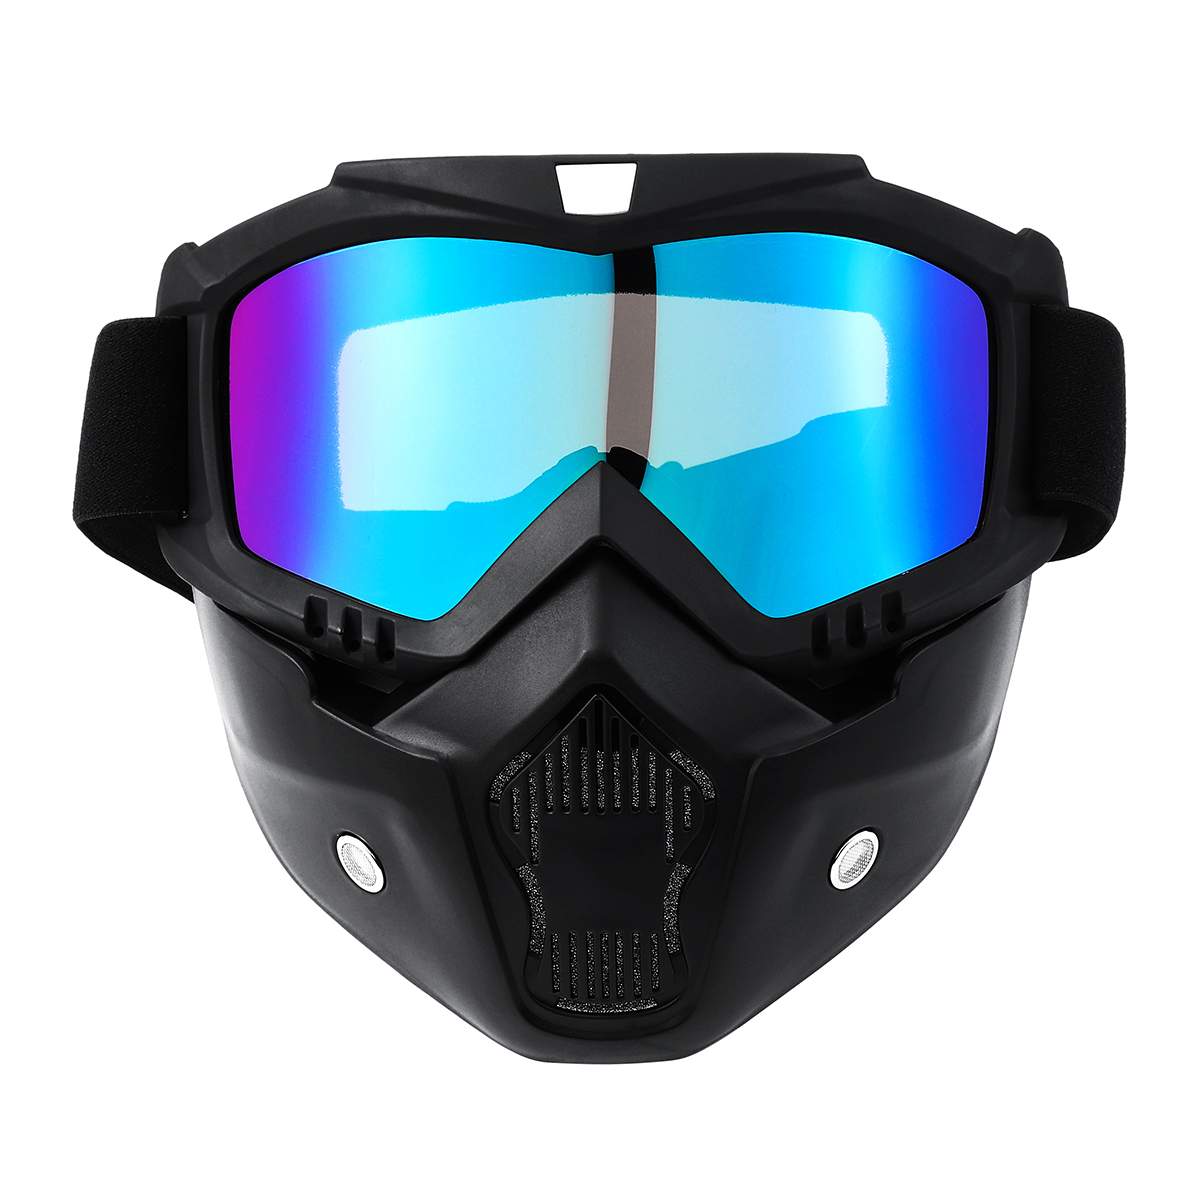 

Съемный мотоцикл Face Маска Защитные очки Off Road Motocross MX ATV Dirt Bike Очки Очки